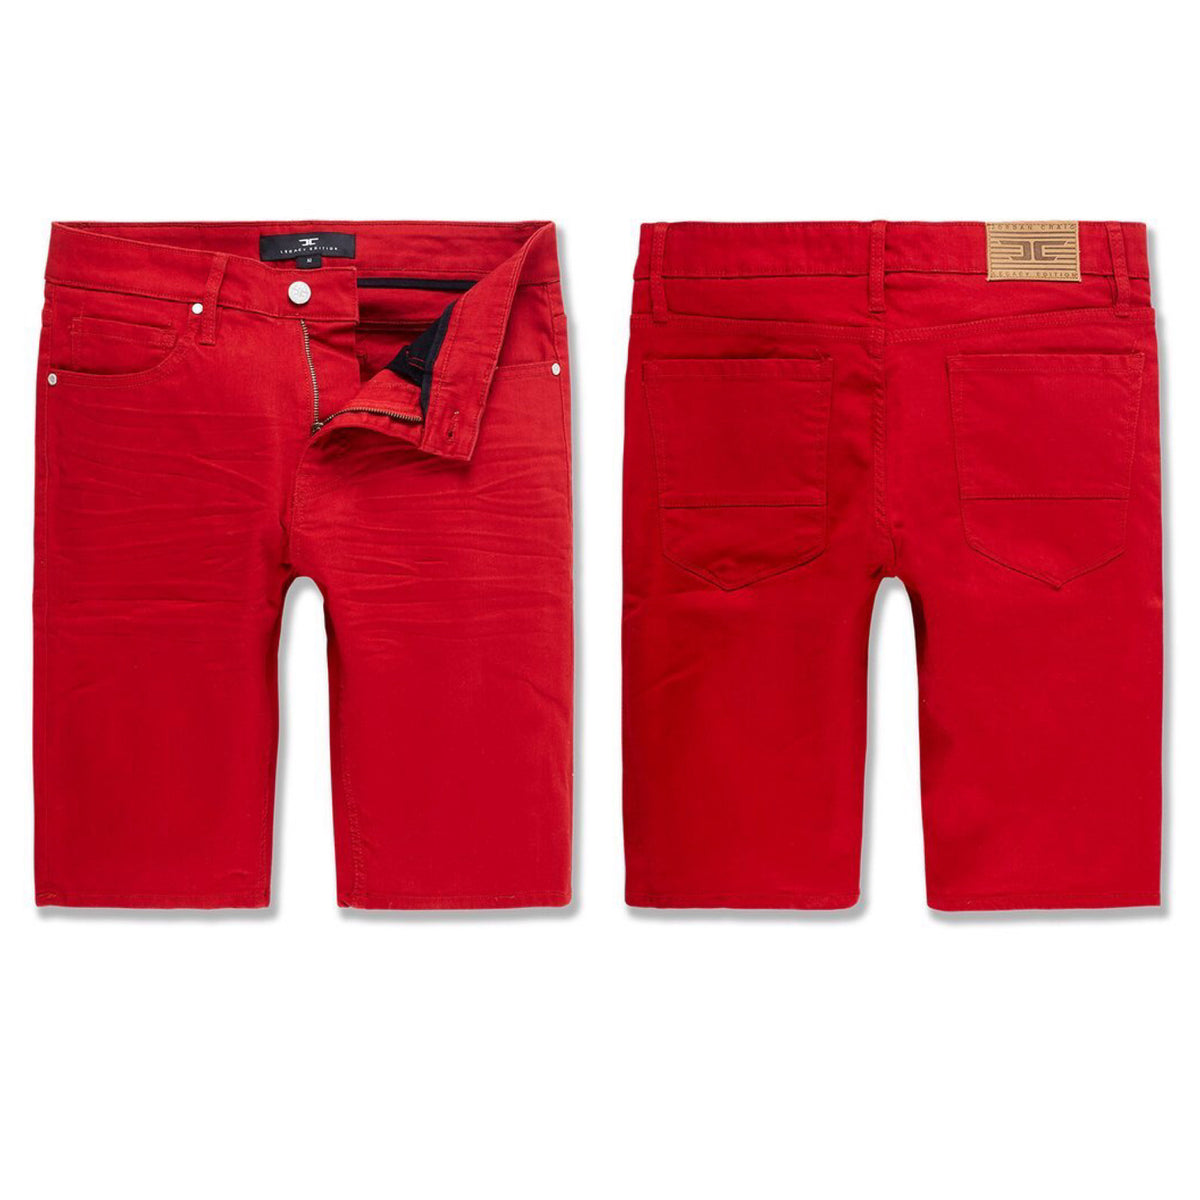 Jordan Craig - Nashville Retro Slub Shorts - Red (J3173S)